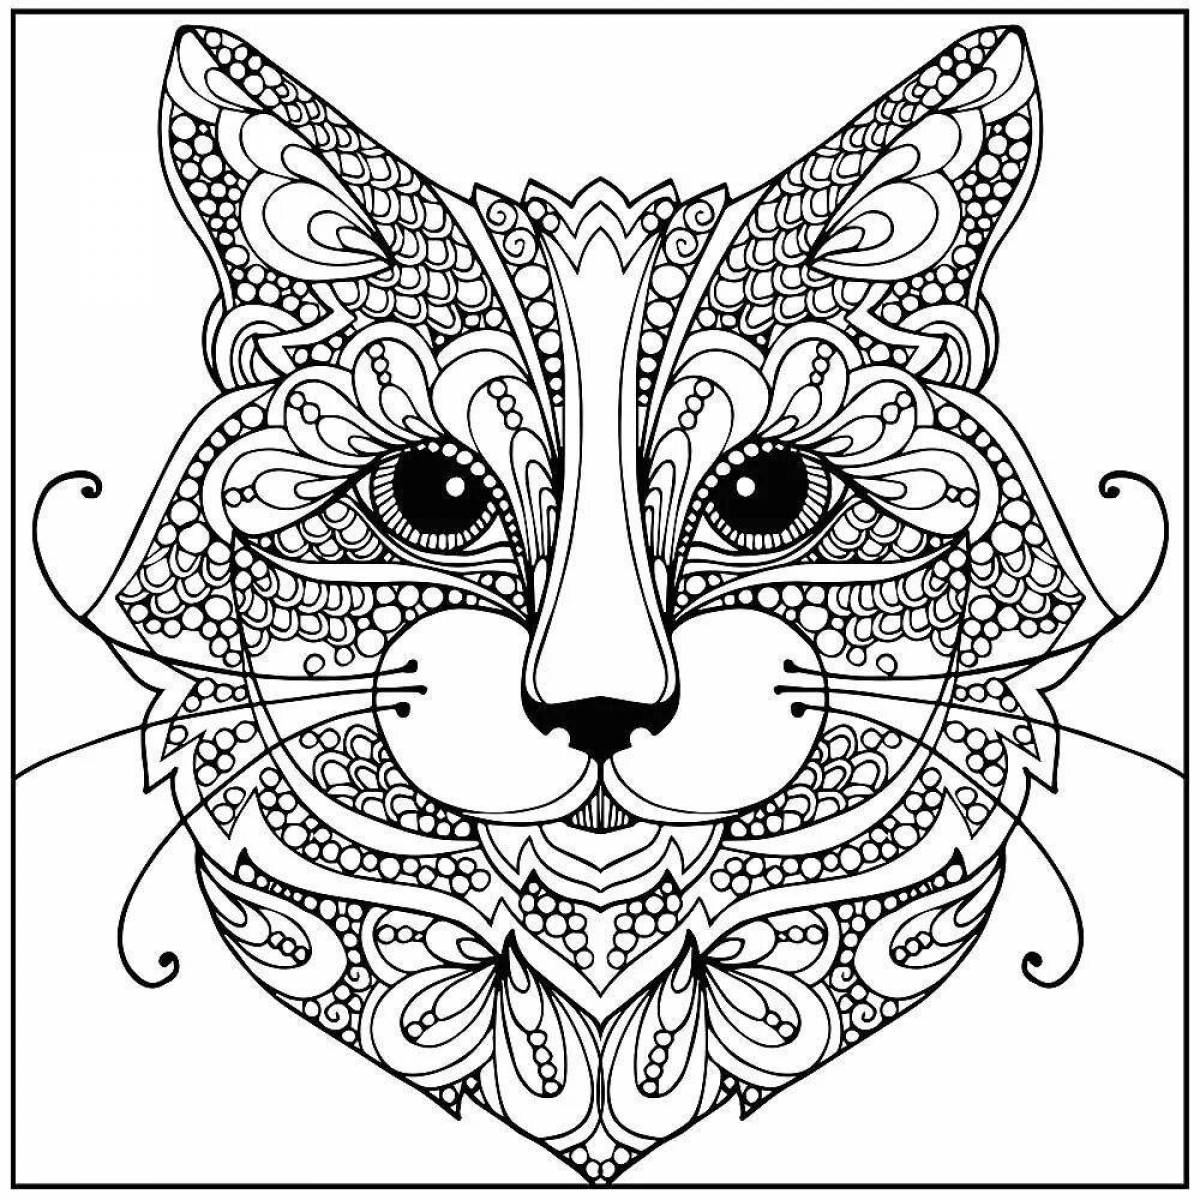 Coloring cute cat mandala